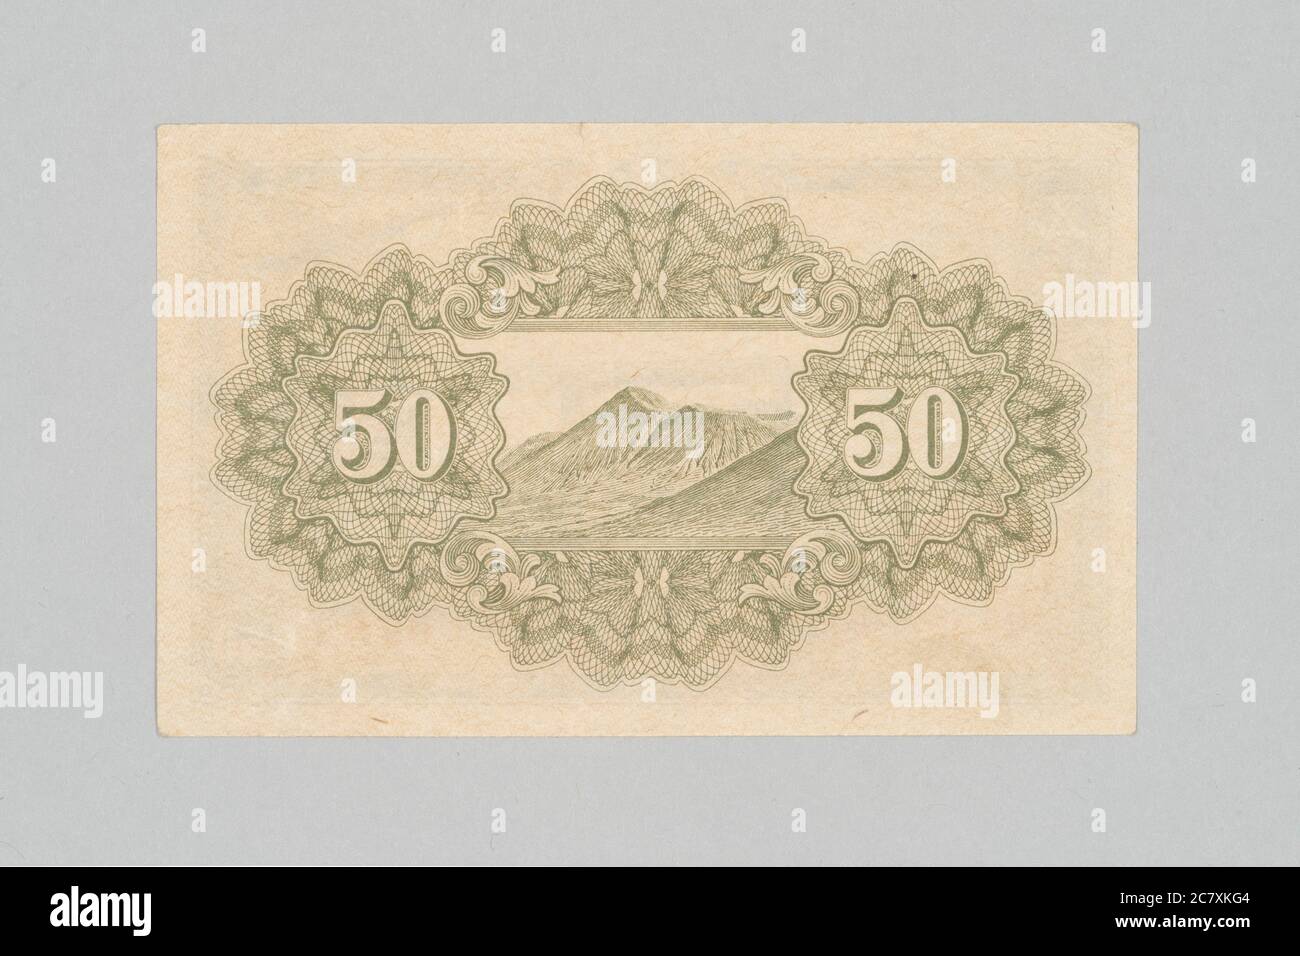 Rückseite der japanischen Banknote 50 sen, Yasukuni Schrein Design, Privatsammlung Stockfoto